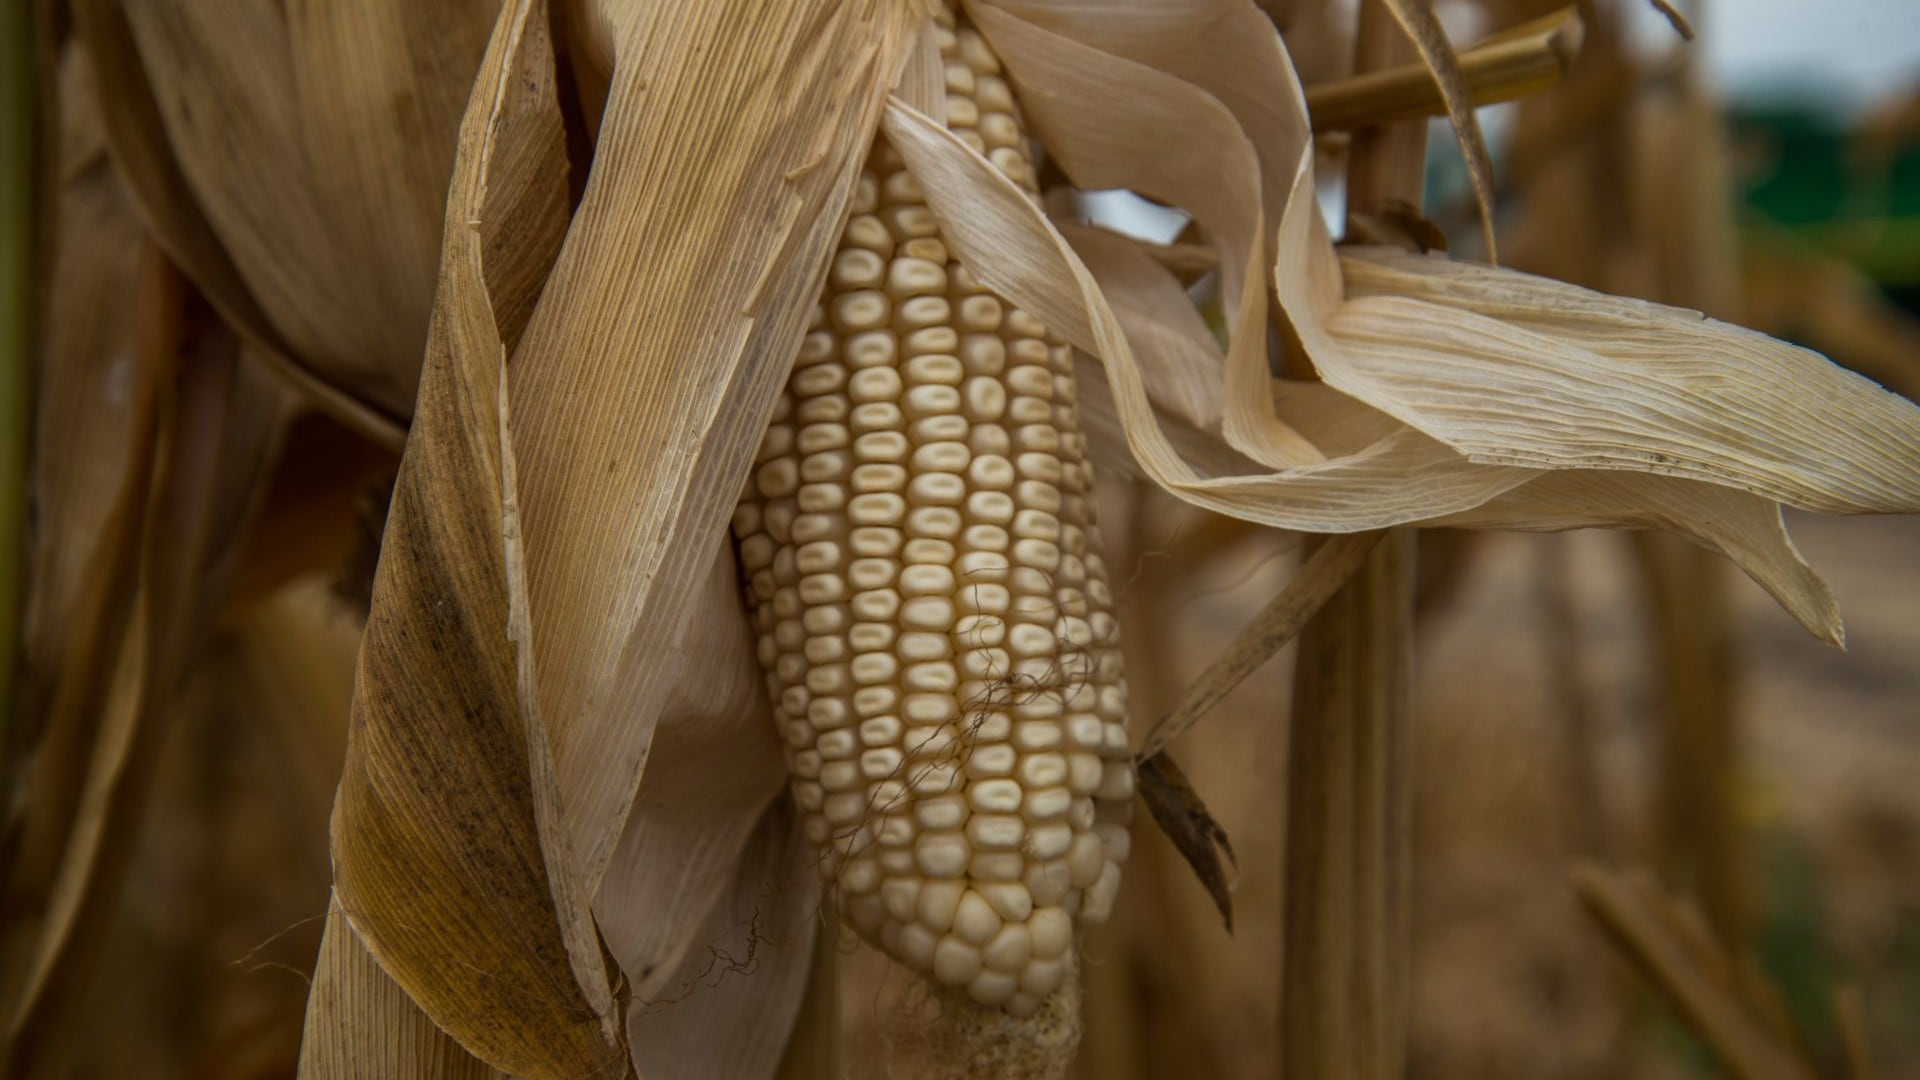 "Cosecha de maíz blanco de Sinaloa Otoño/Invierno 2020-2021: transición agroecológica y sin glisofato"